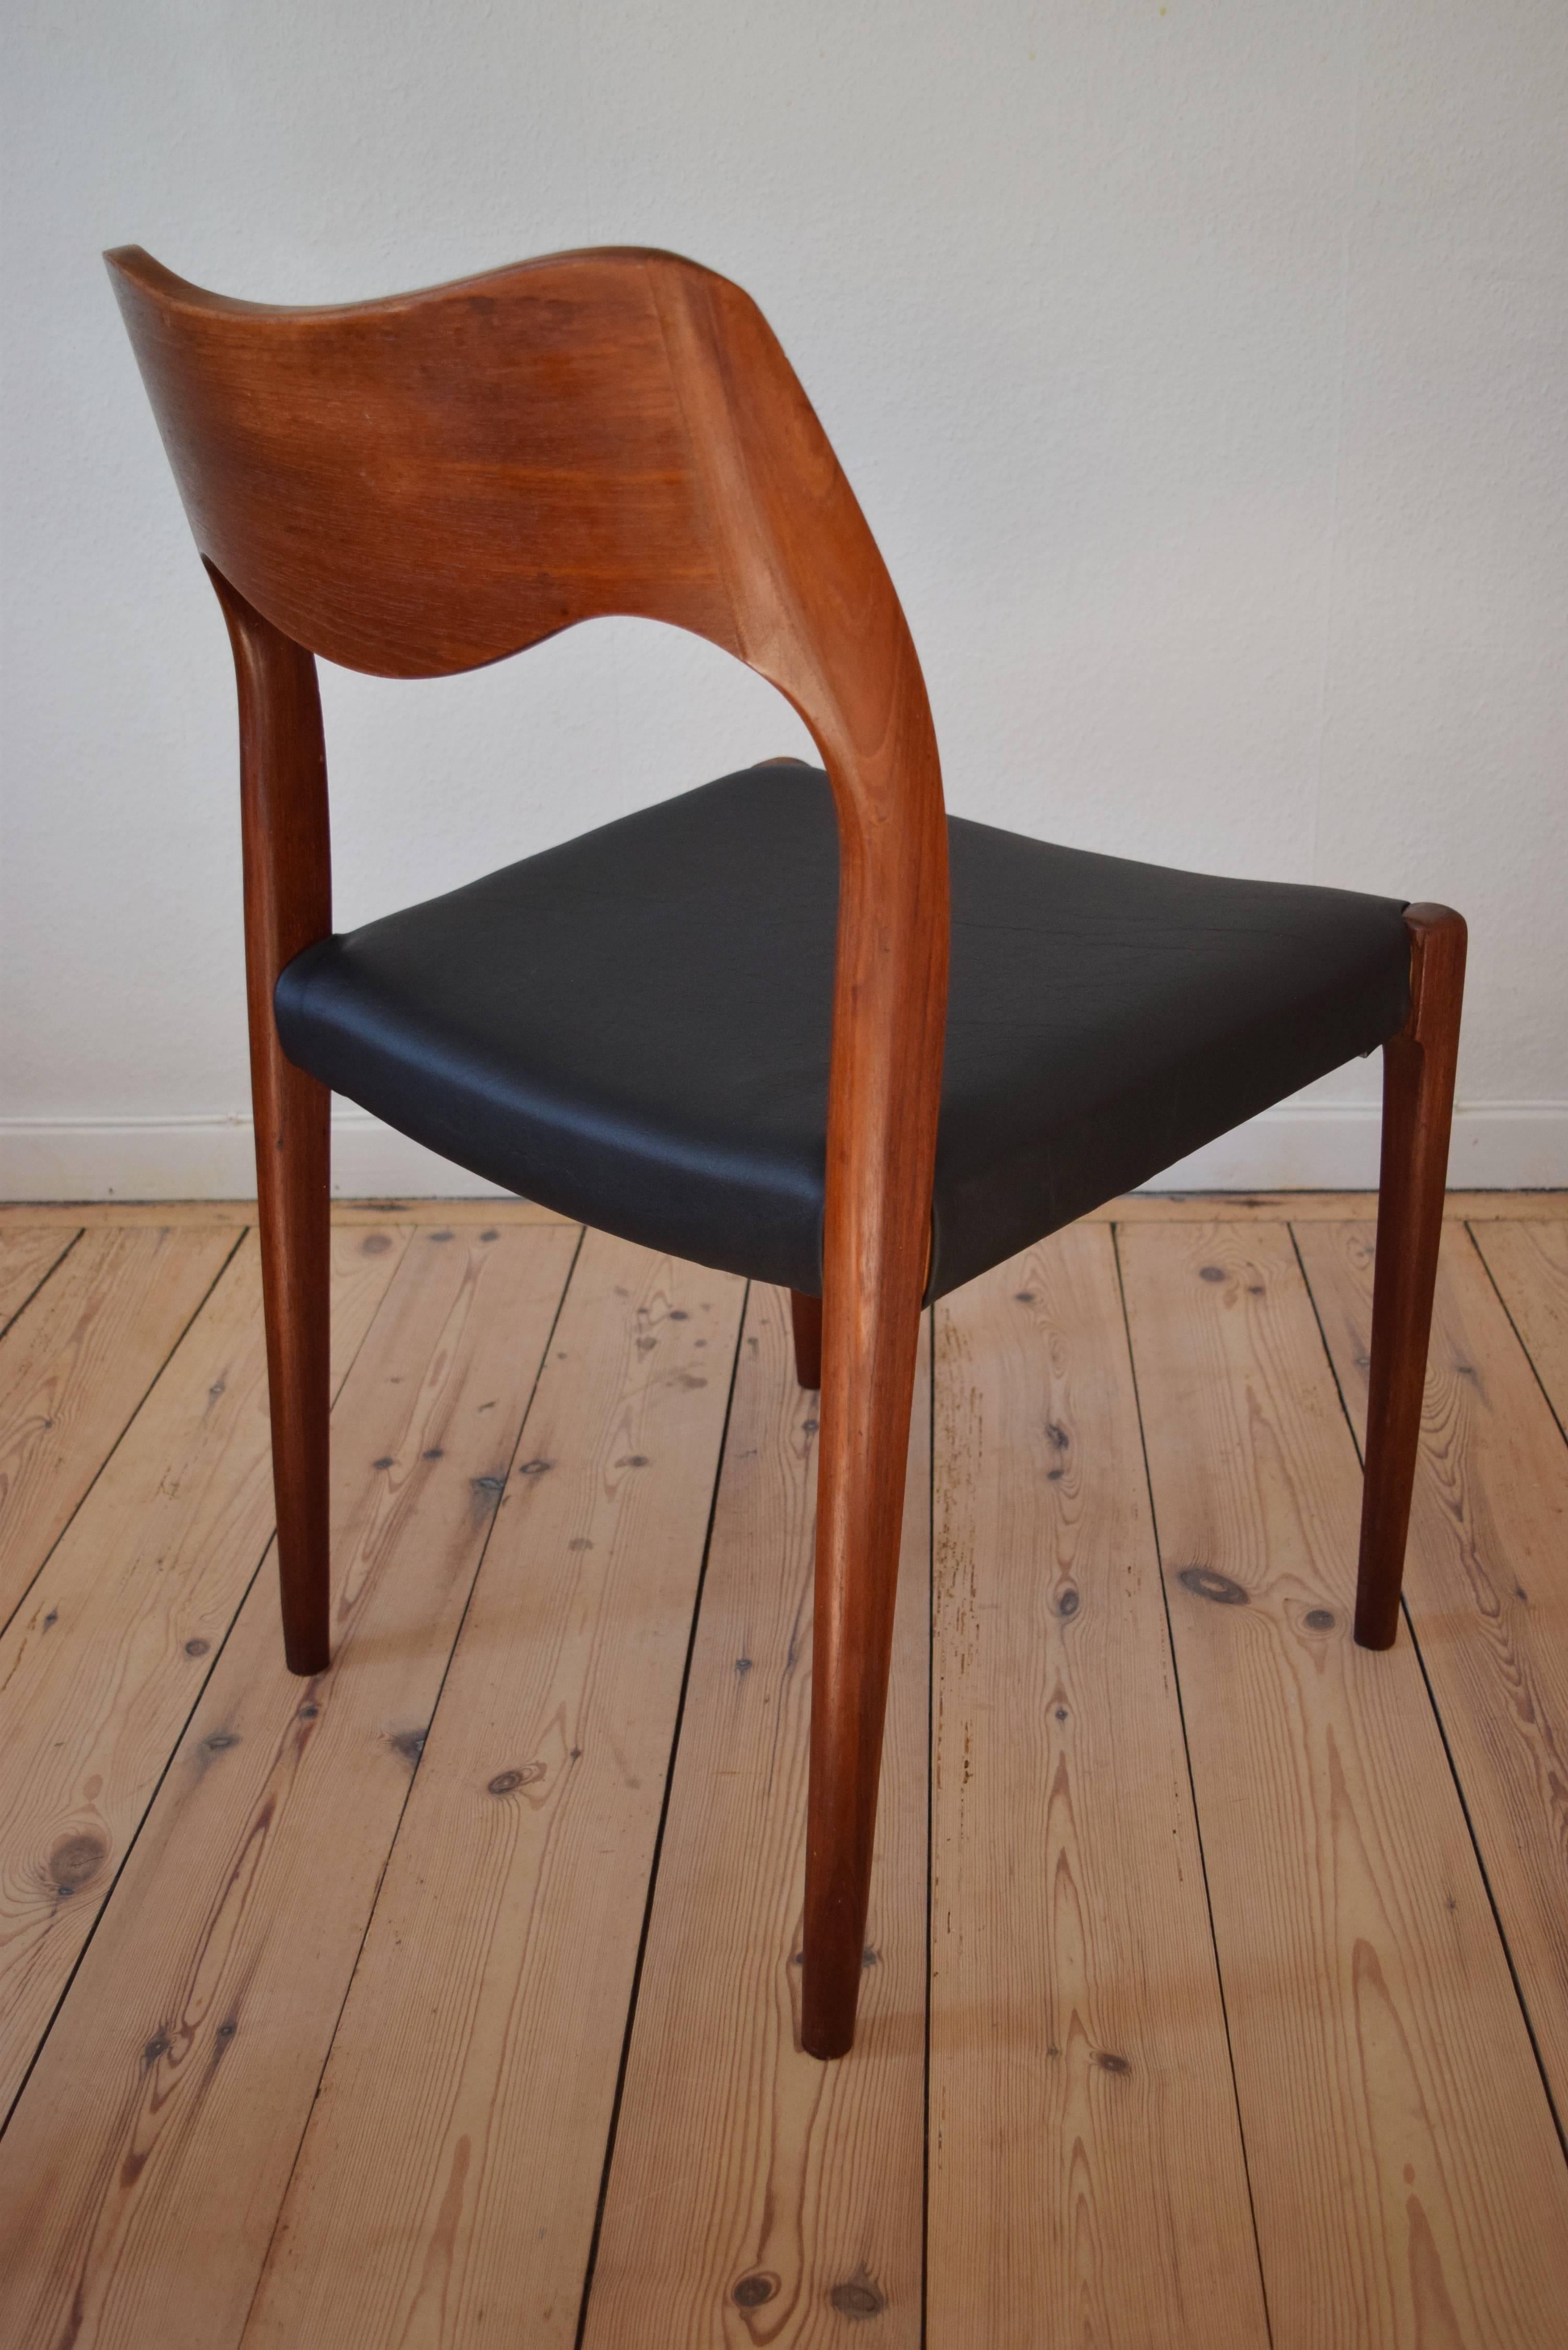 Mid-20th Century Niles O. Møller #71 Teak Dining Chair